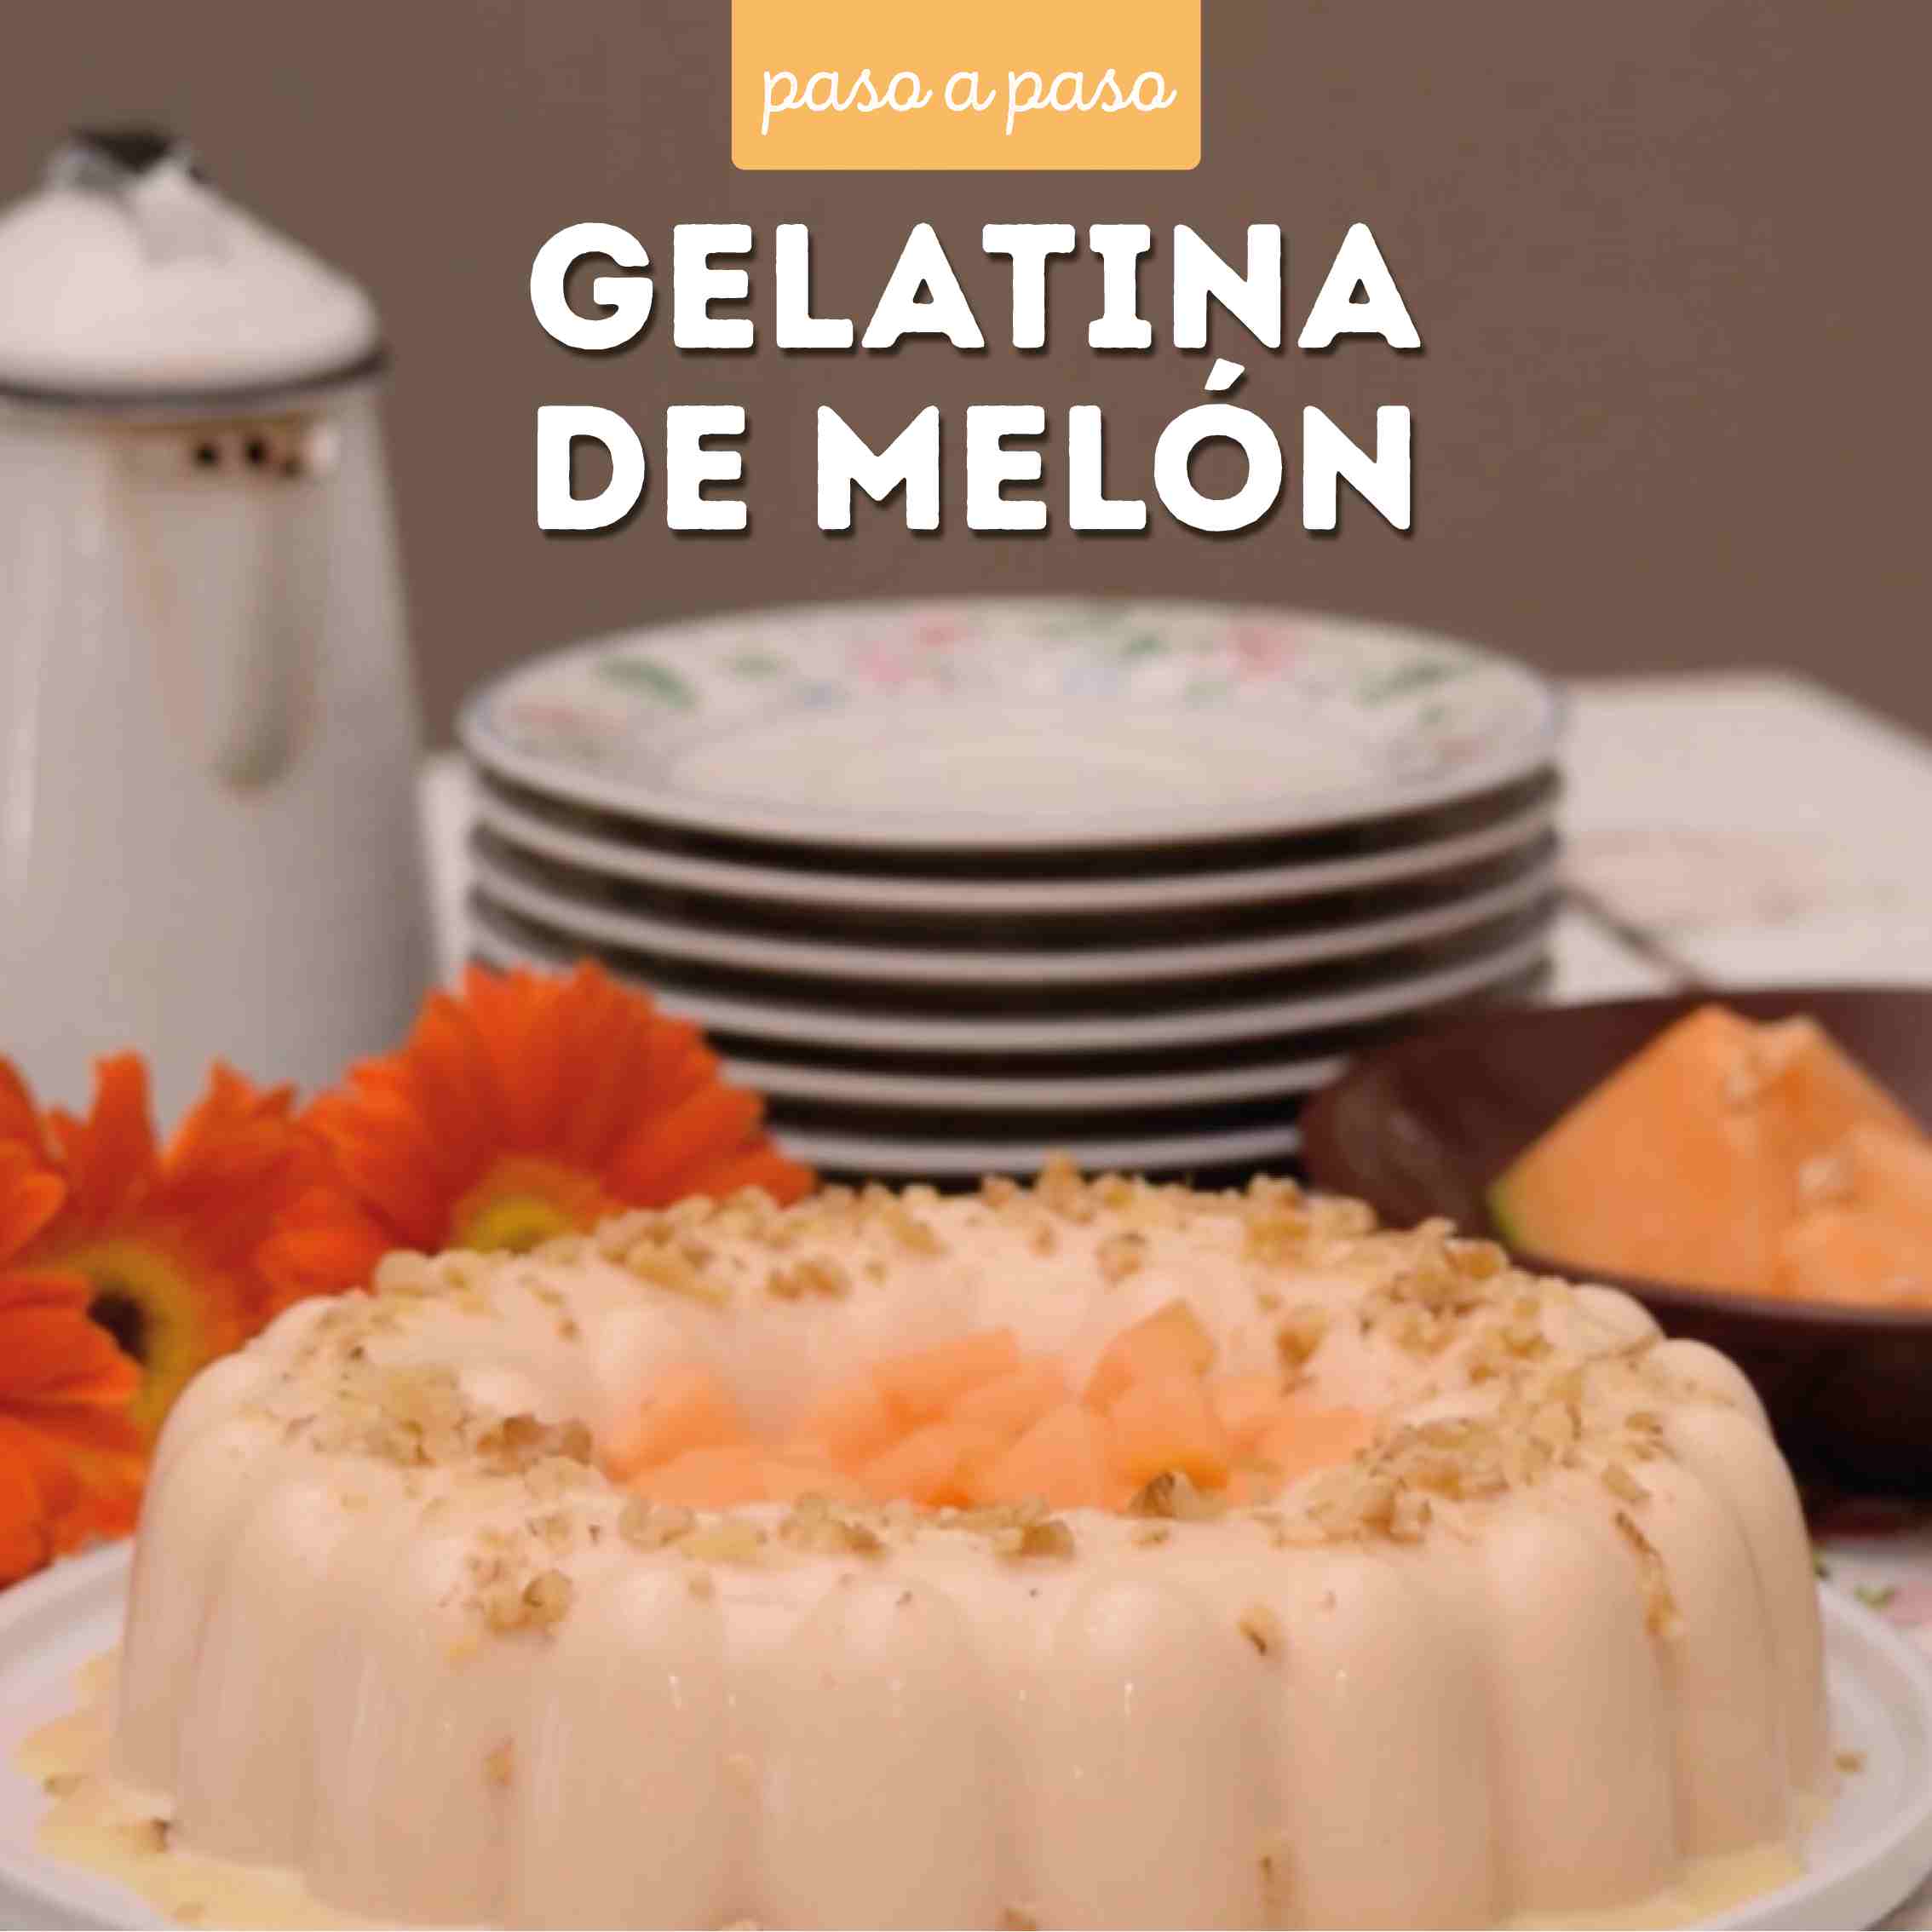 Receta Gelatina de melón